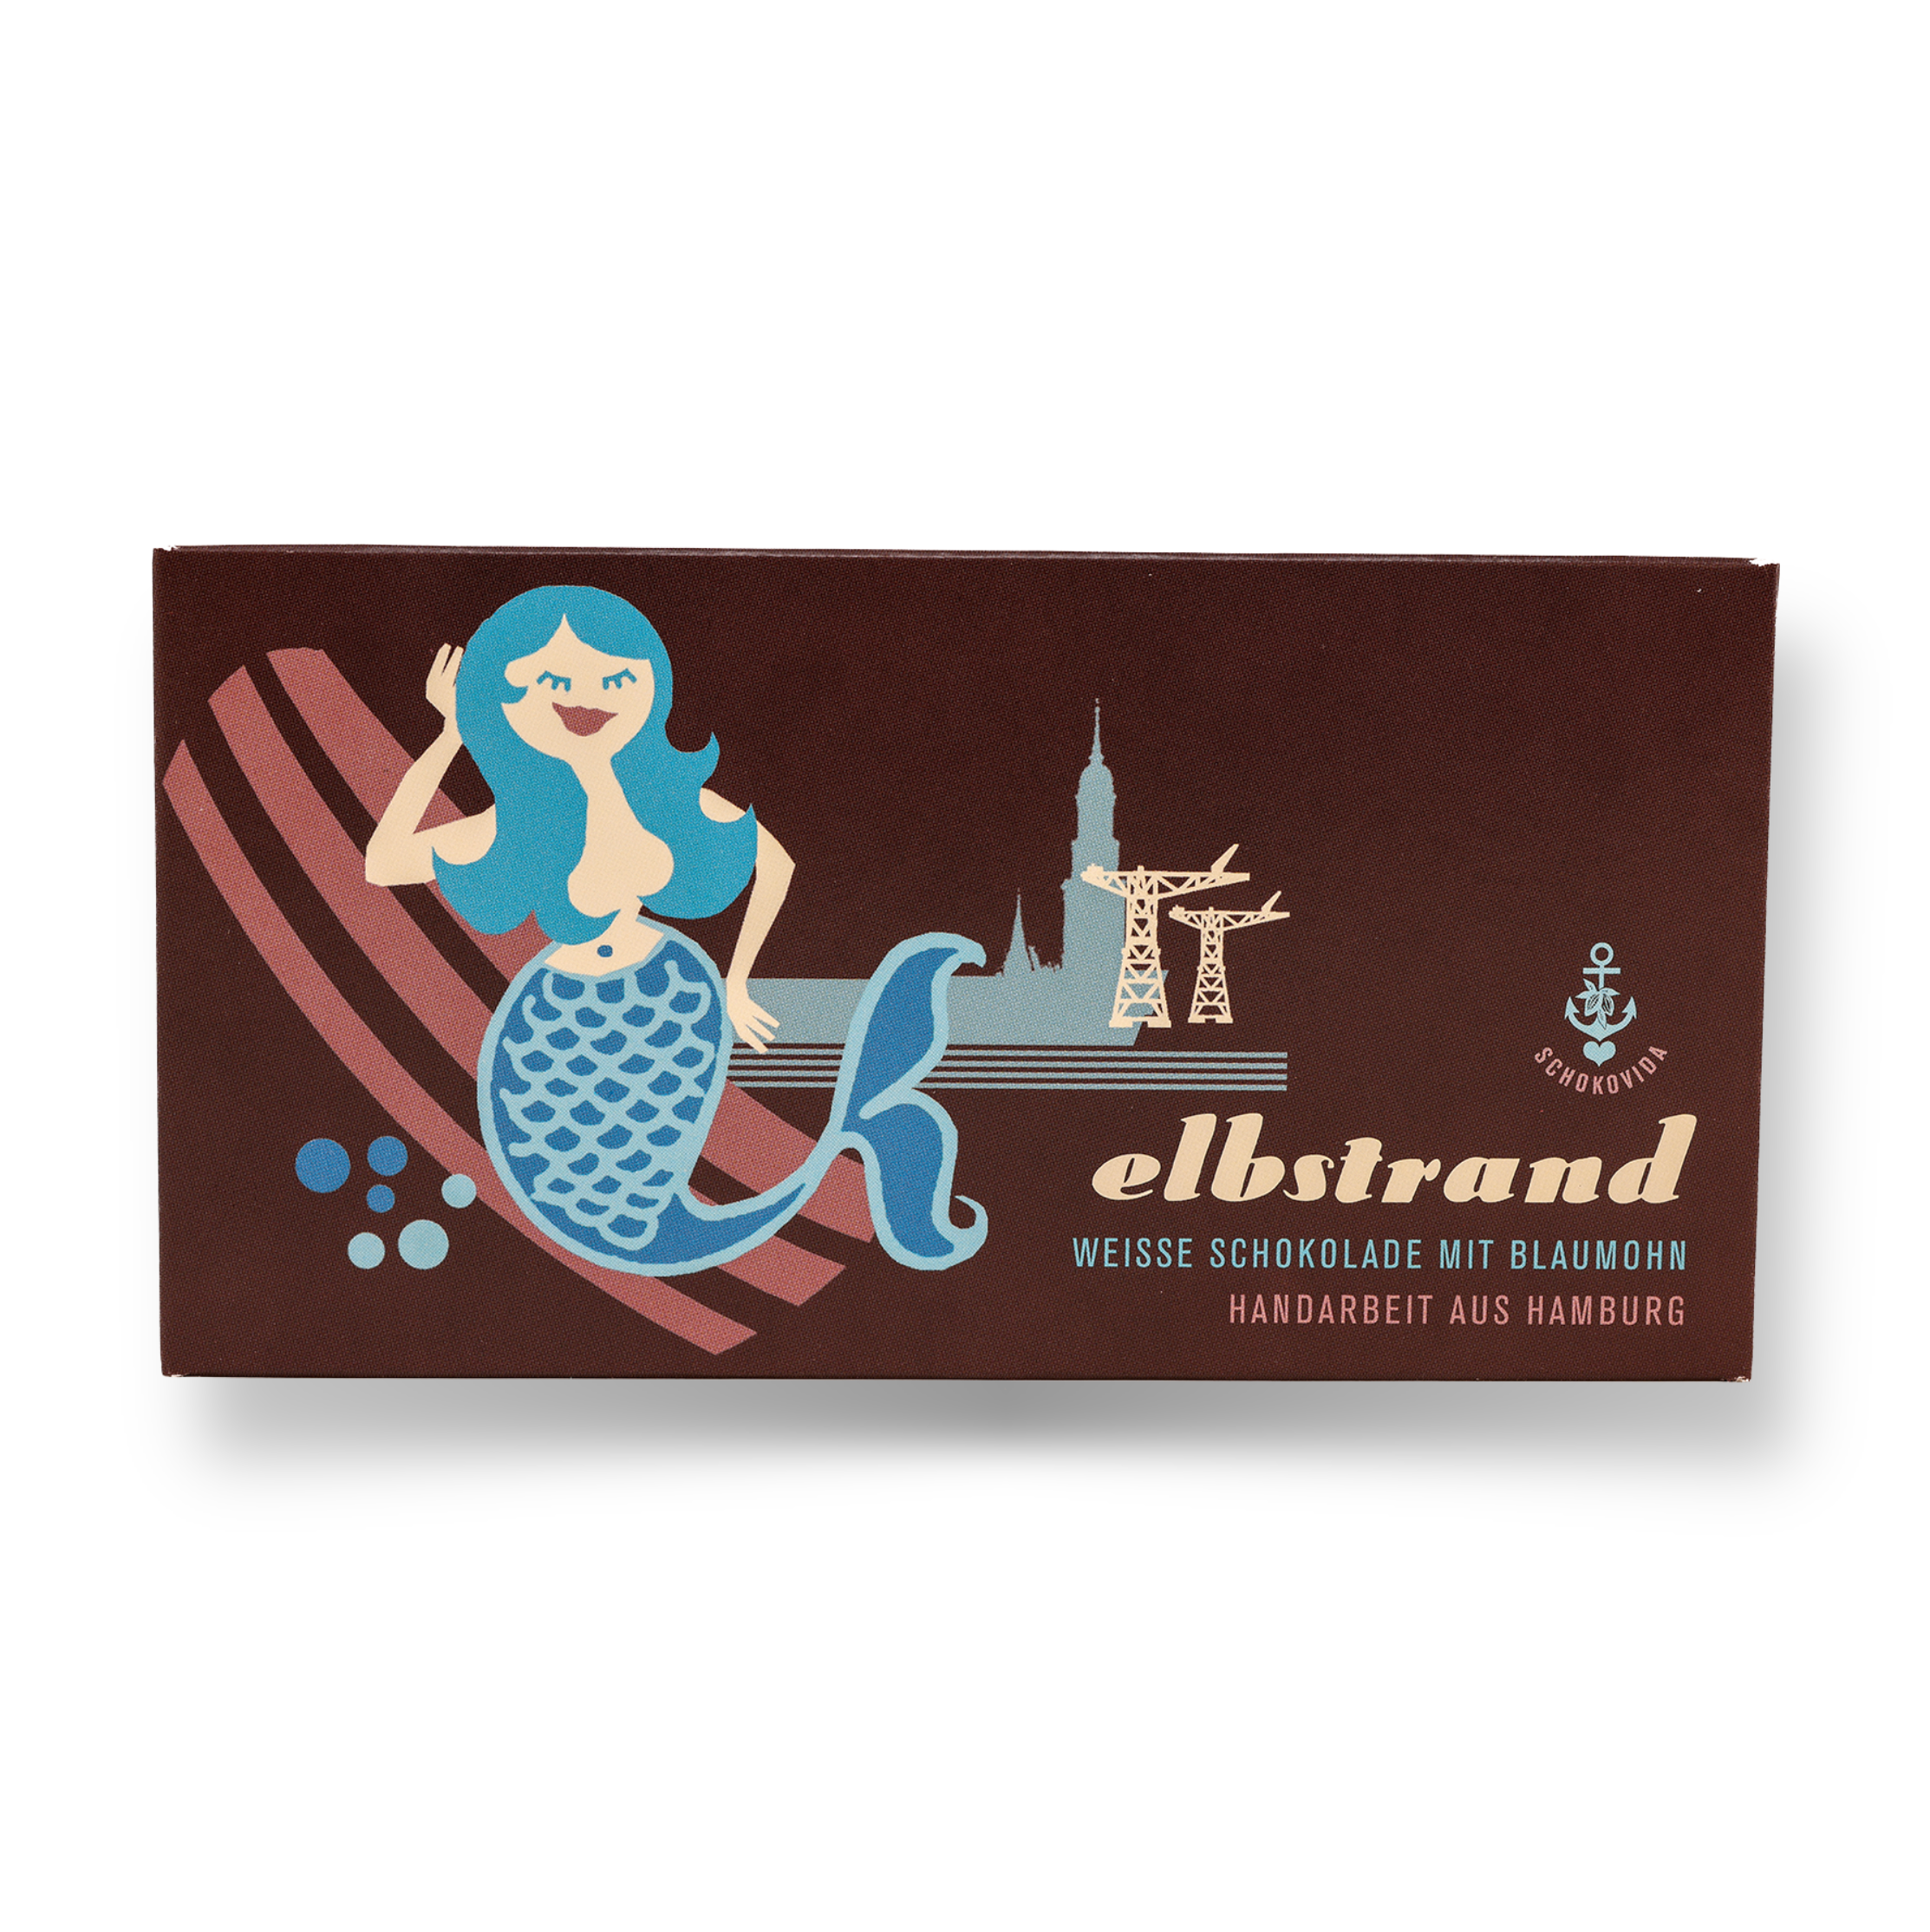 Elbstrand – Weiße Schokolade mit Blaumohn